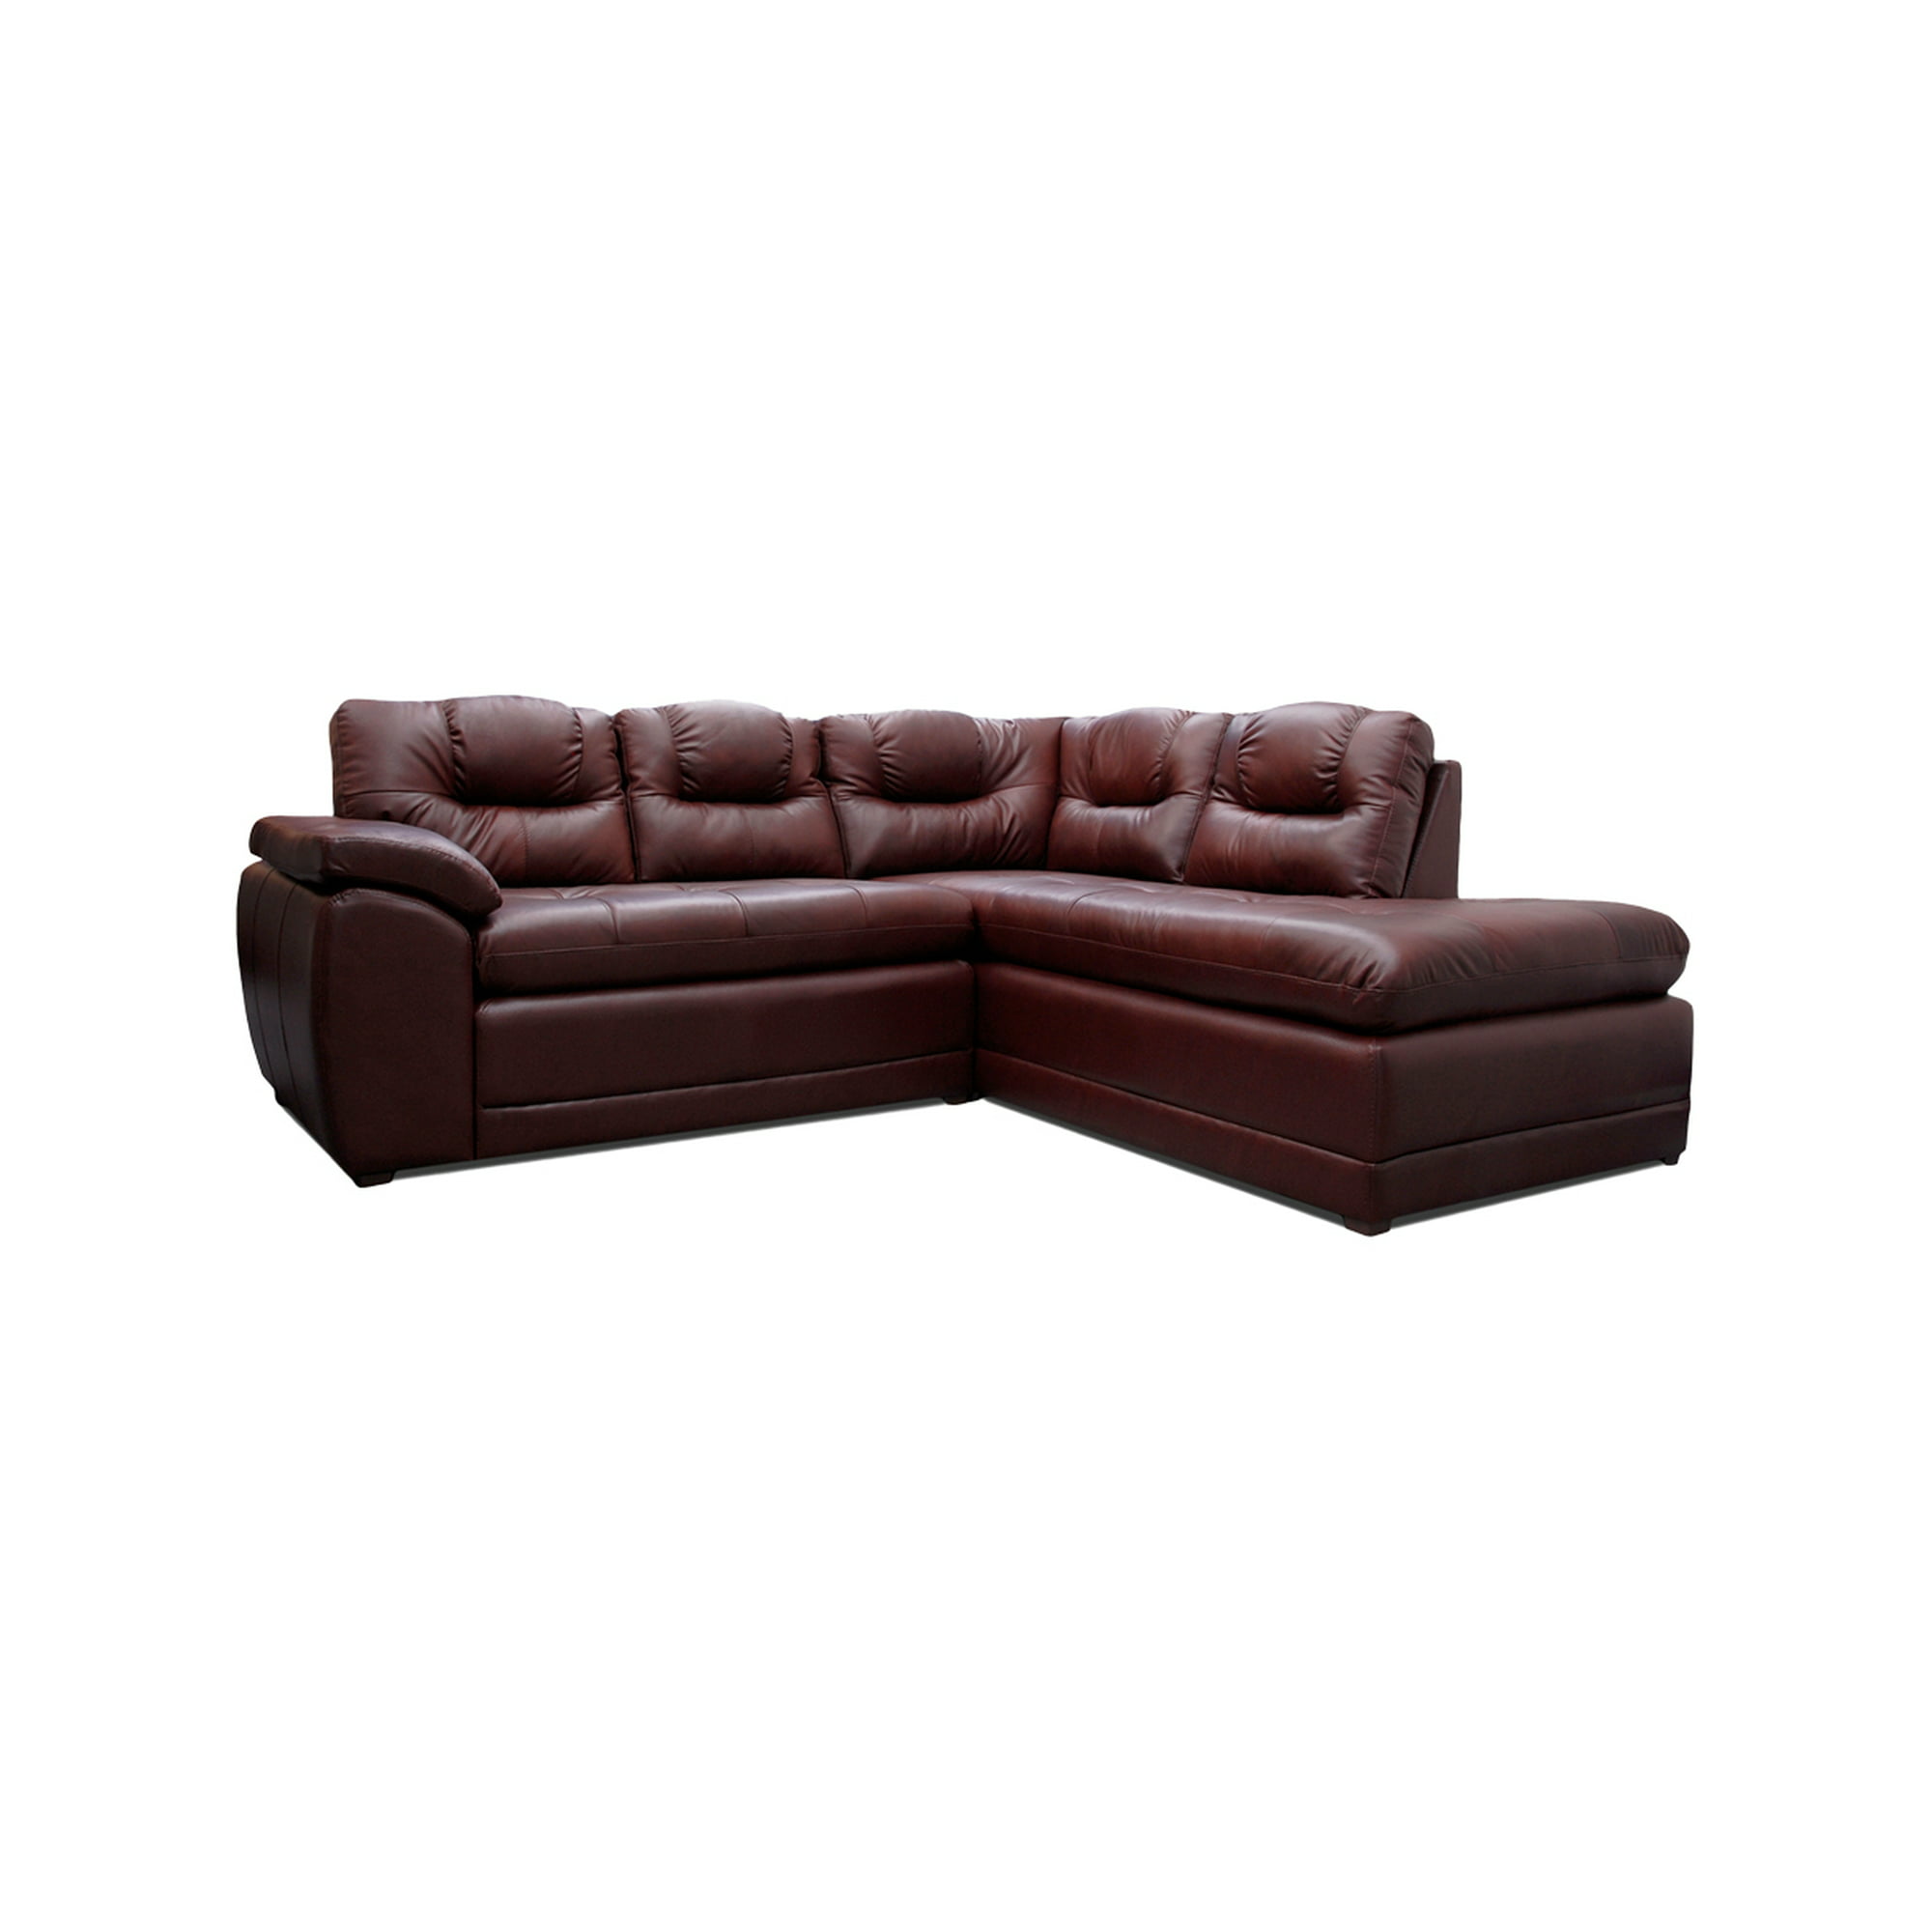 Sala esquinera sevilla de piel genuina sofá y cheise long derecho tabaco confortopiel sevilla